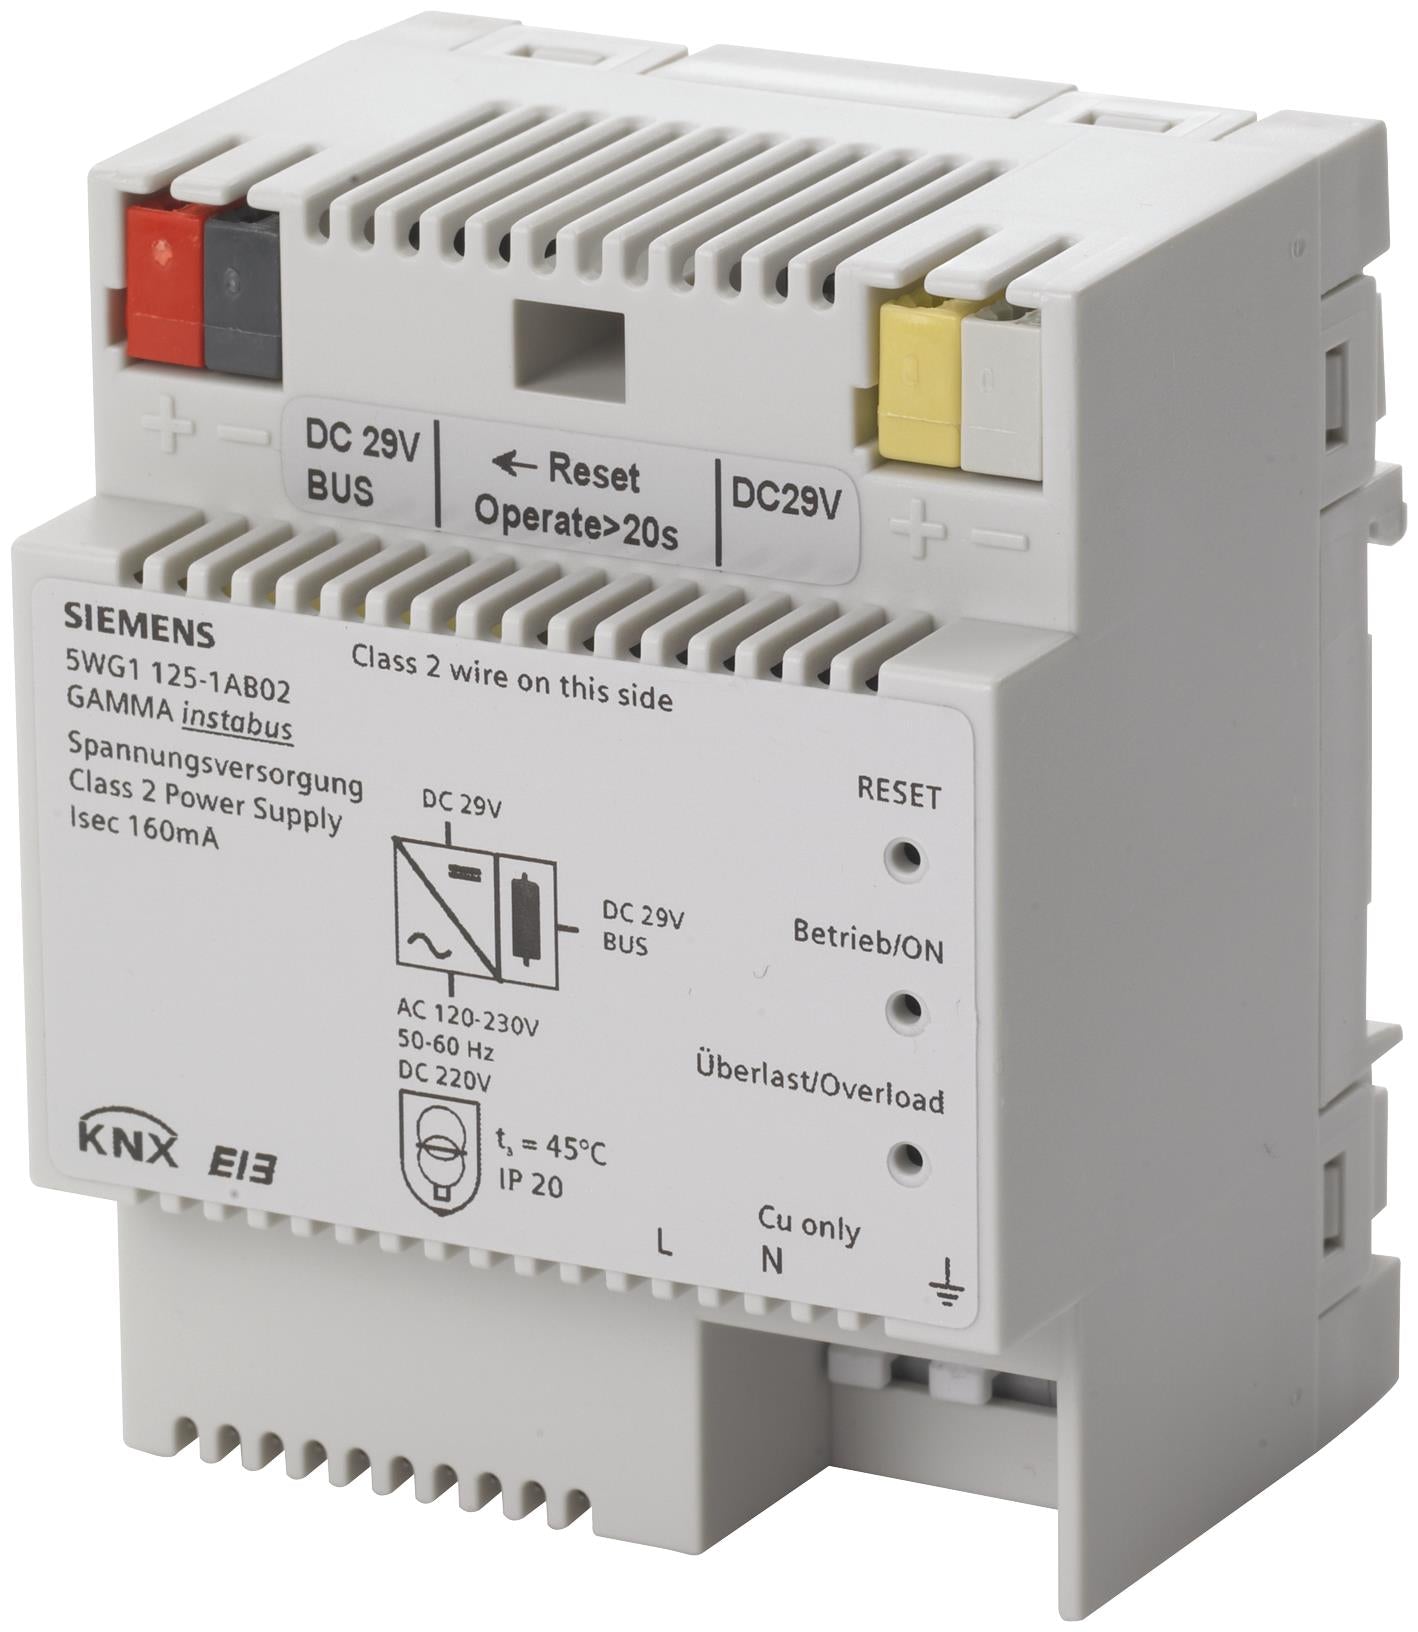 KNX Power supply unit DC 29 V